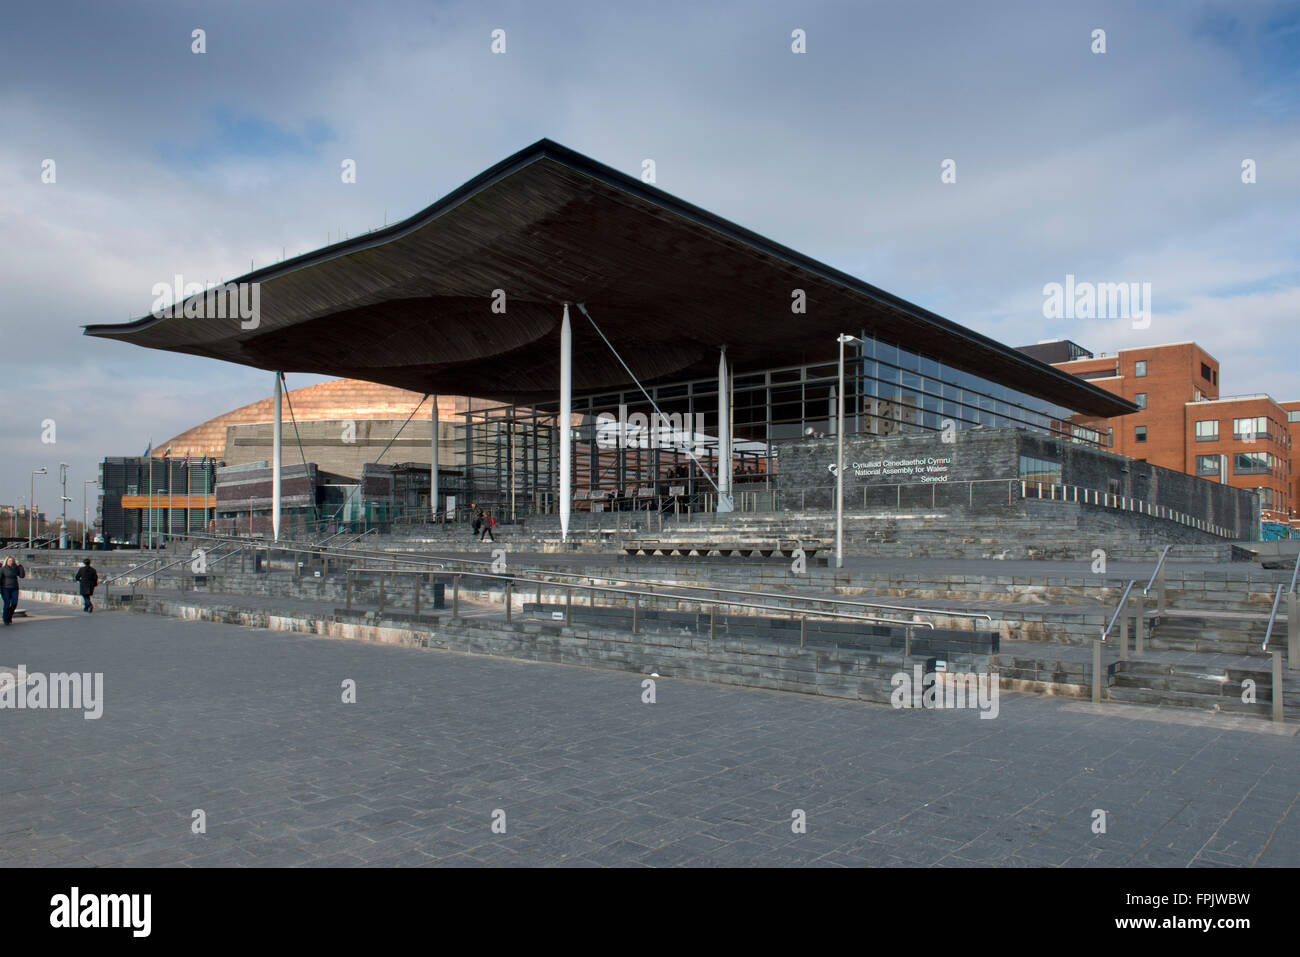 Assemblea nazionale del Galles (senedd), cynulliad cenedlaethol cymru e Edificio Pierhead nella baia di Cardiff, Galles, Regno Unito Foto Stock